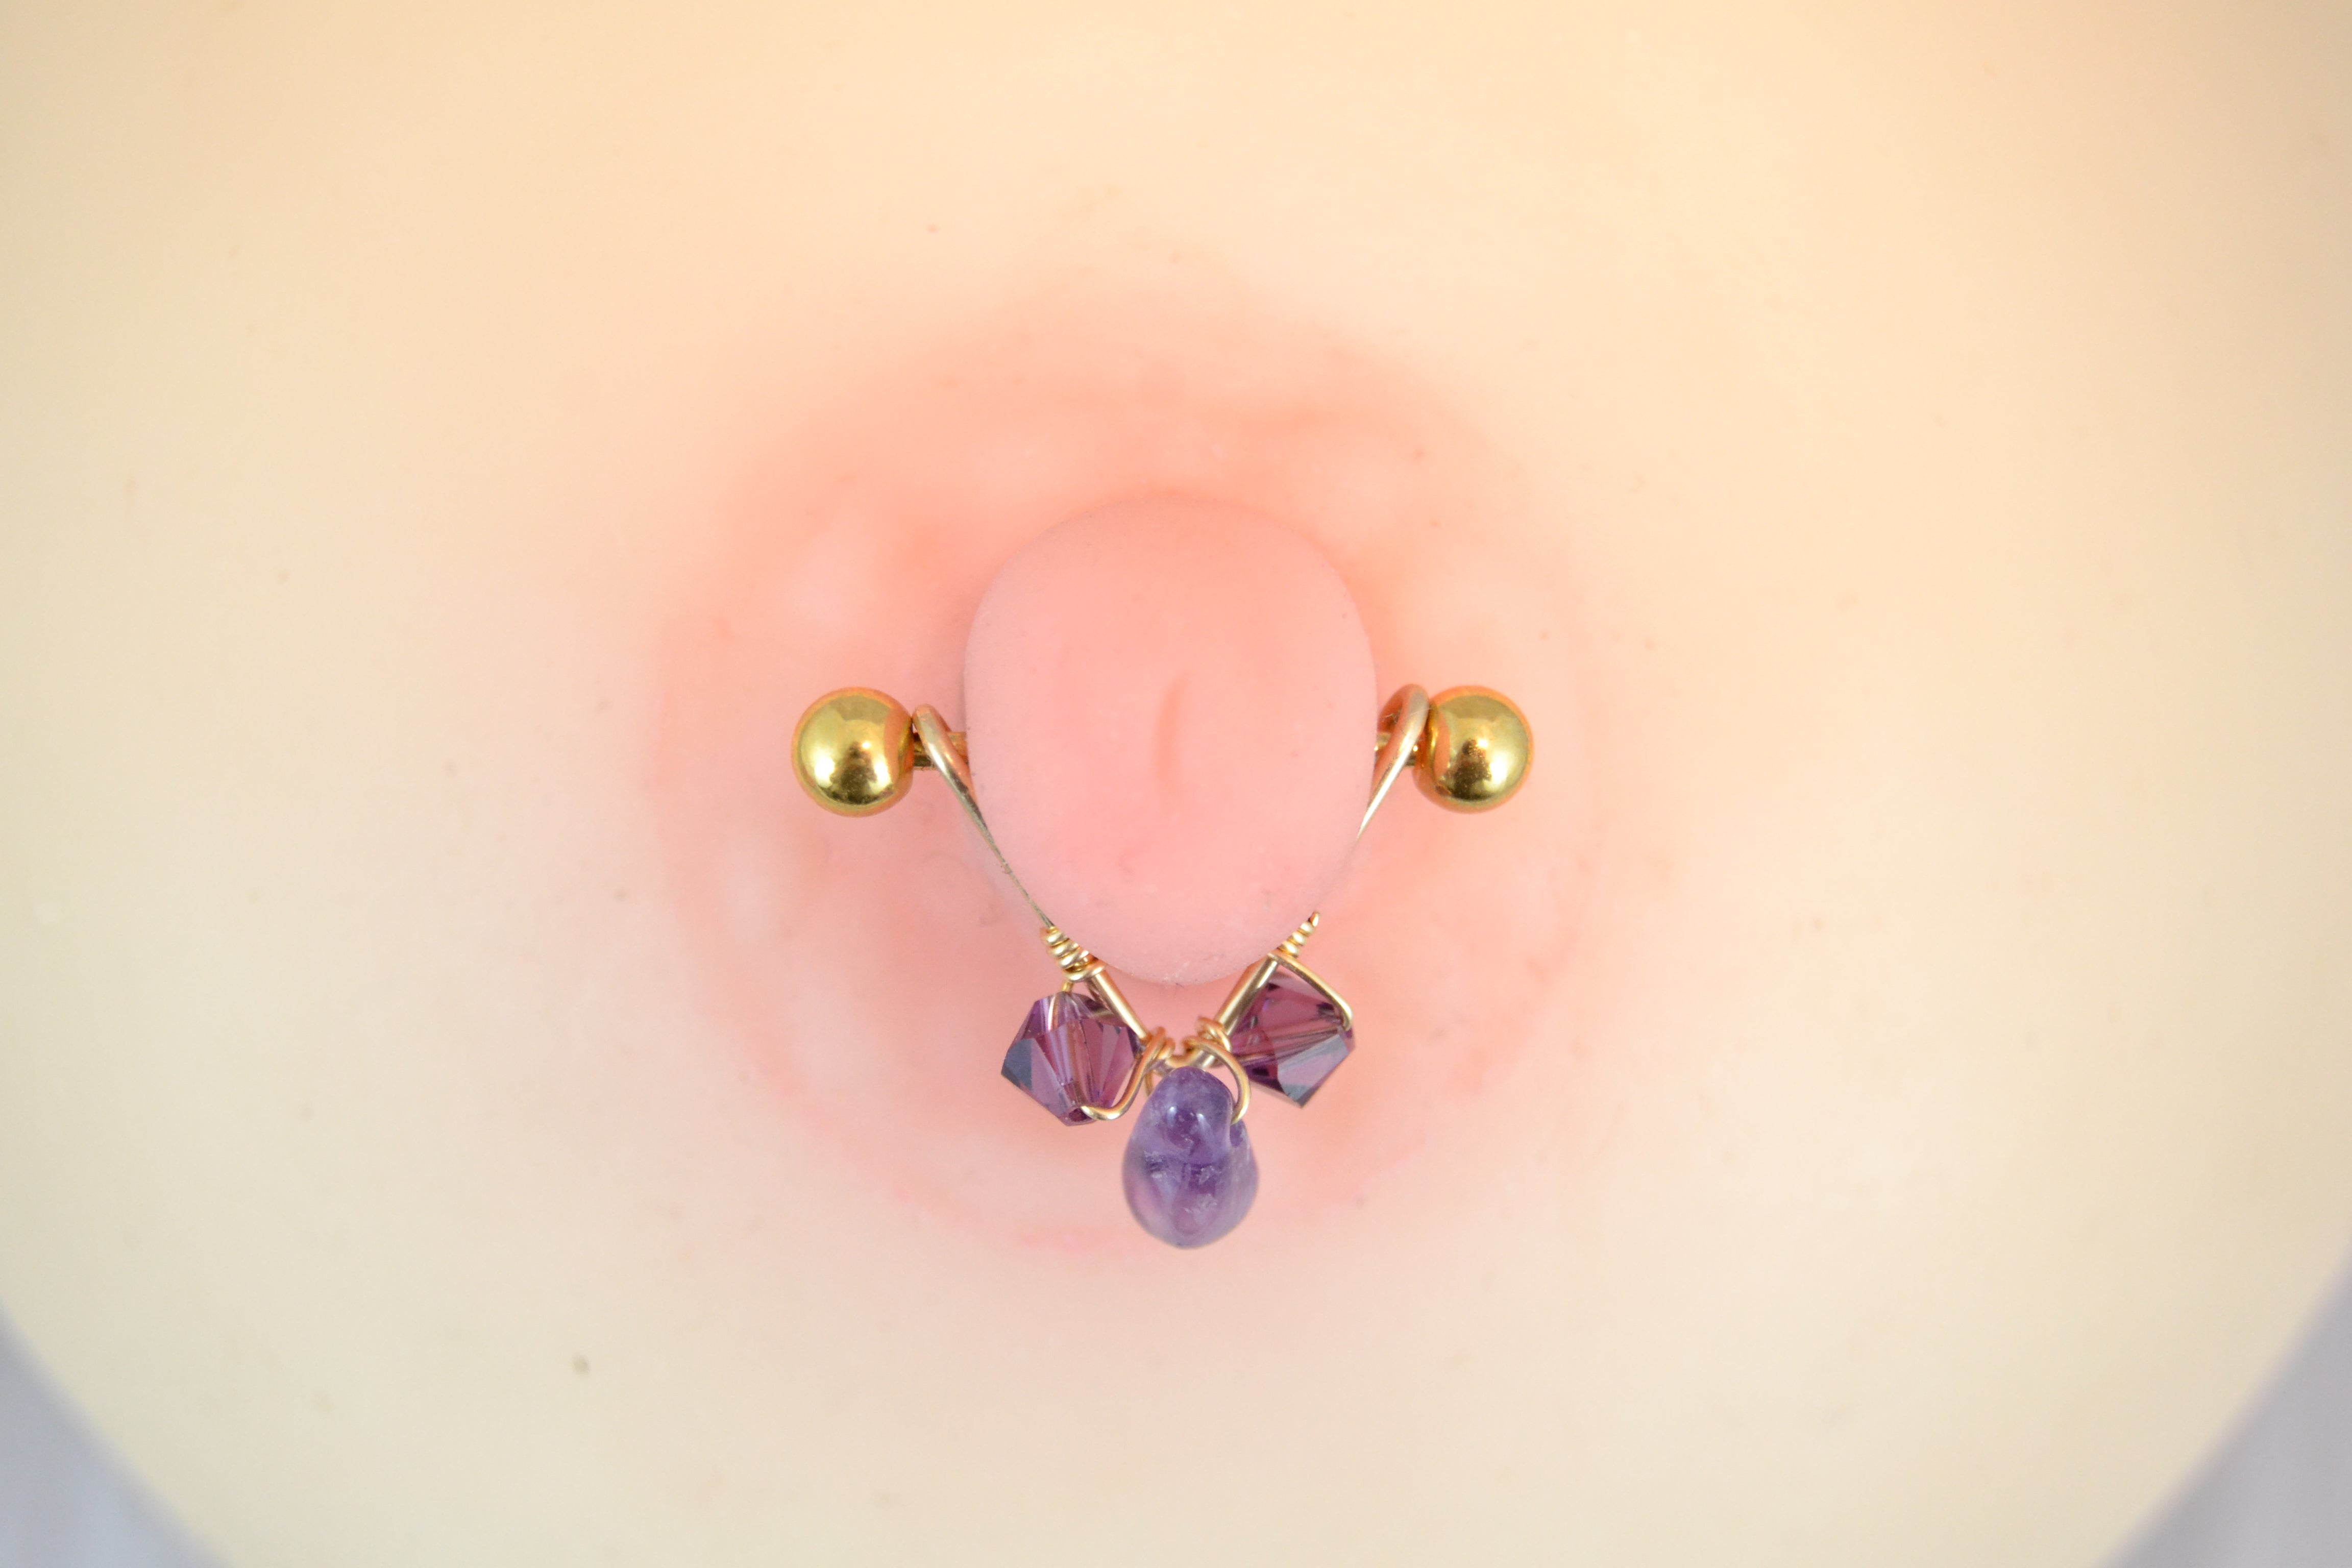 Healing Crystal V Shaped Gold Nipple Ring - 1 pc